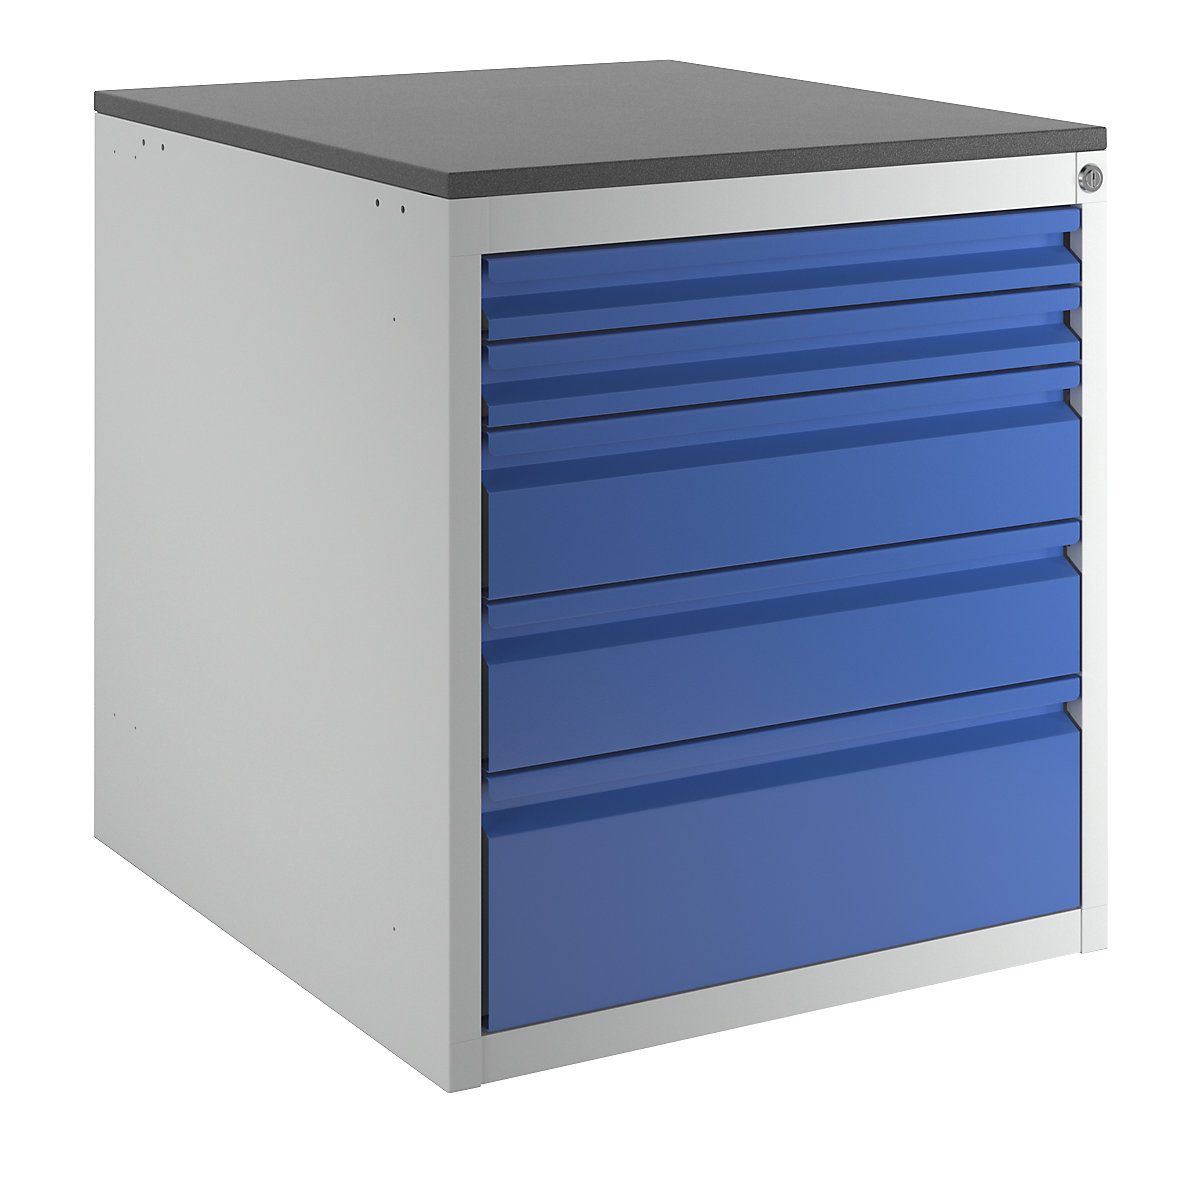 Armoire à tiroirs sur glissières télescopiques – RAU, hauteur 640 mm, tiroirs: 2 x 60, 2 x 120, 1 x 180 mm, gris clair / bleu gentiane, largeur 580 mm-5